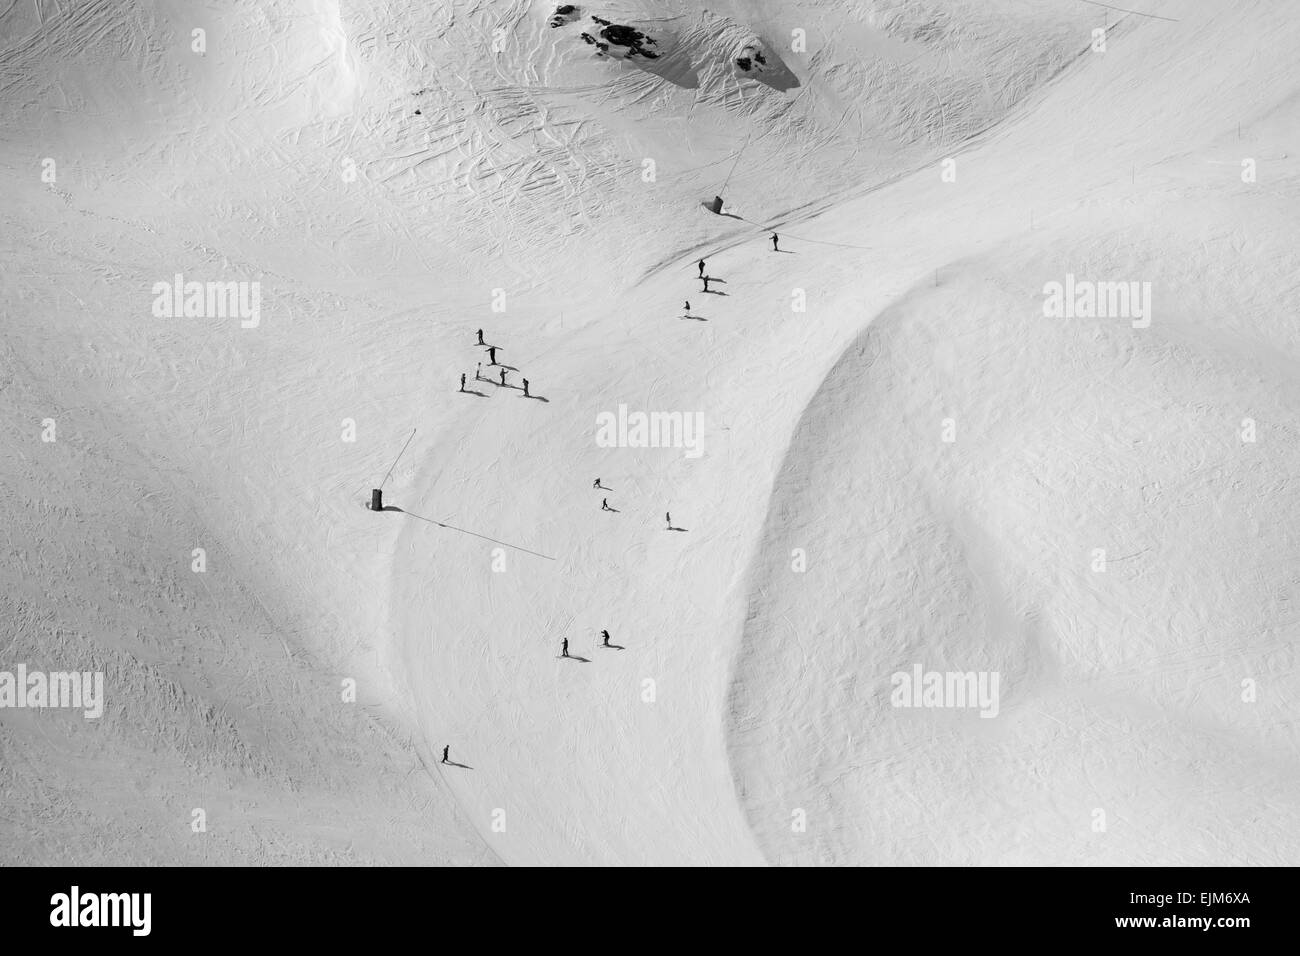 Skifahrer Les Arcs 2015 Stockfoto